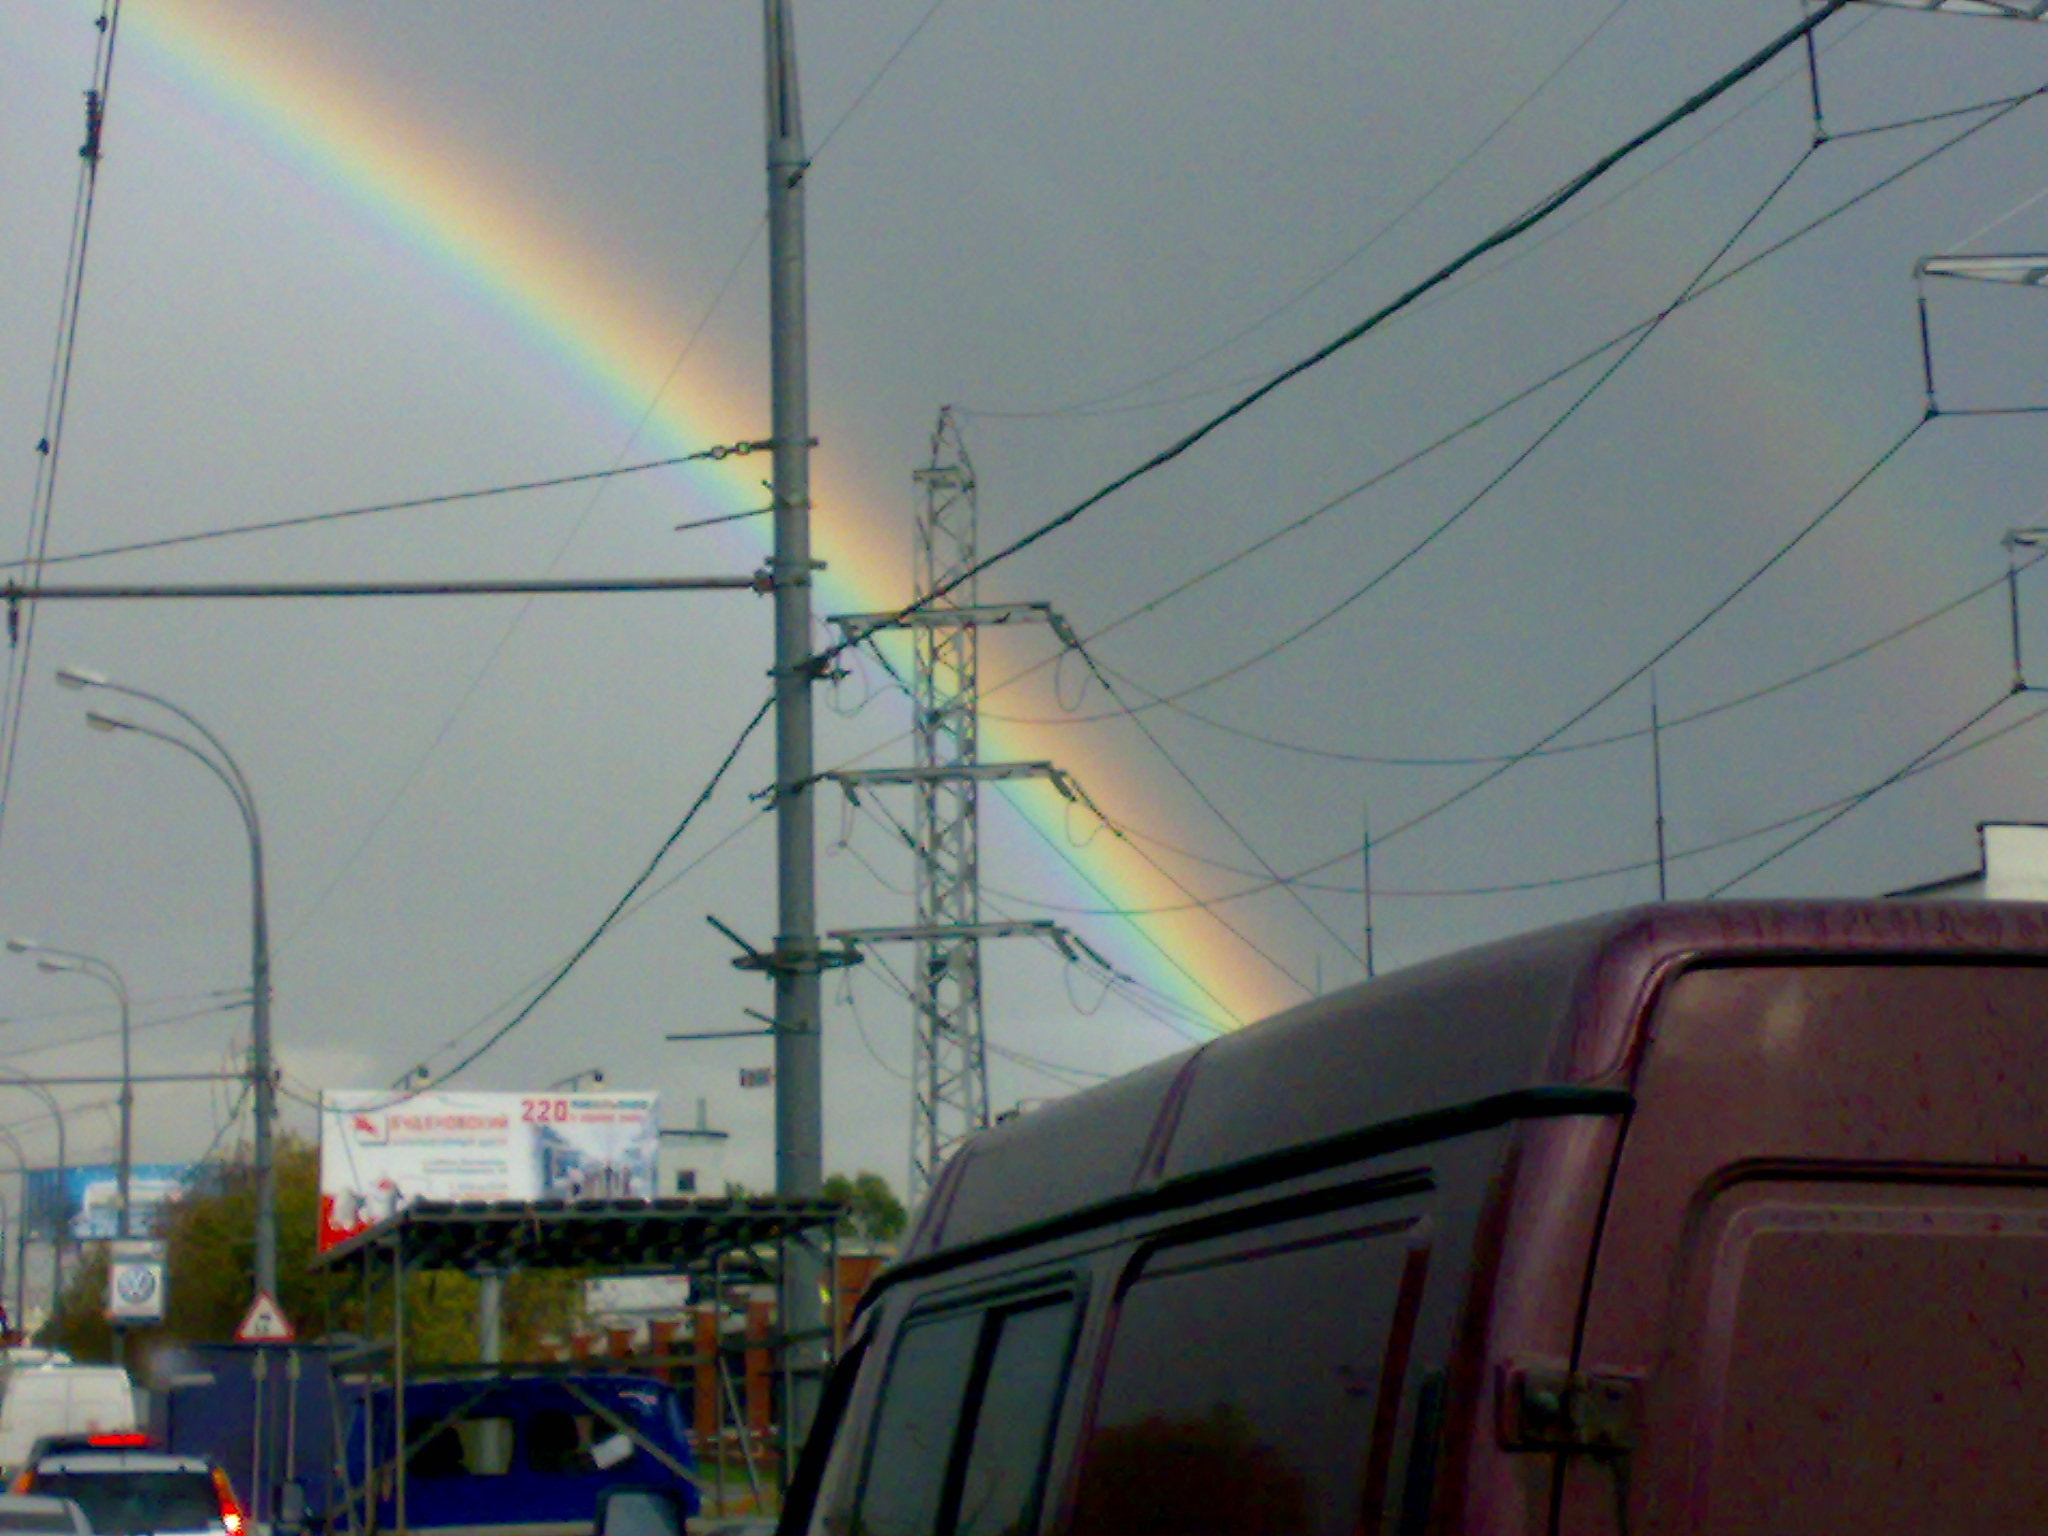 Nokia N73 sample photo. Rainbow photography